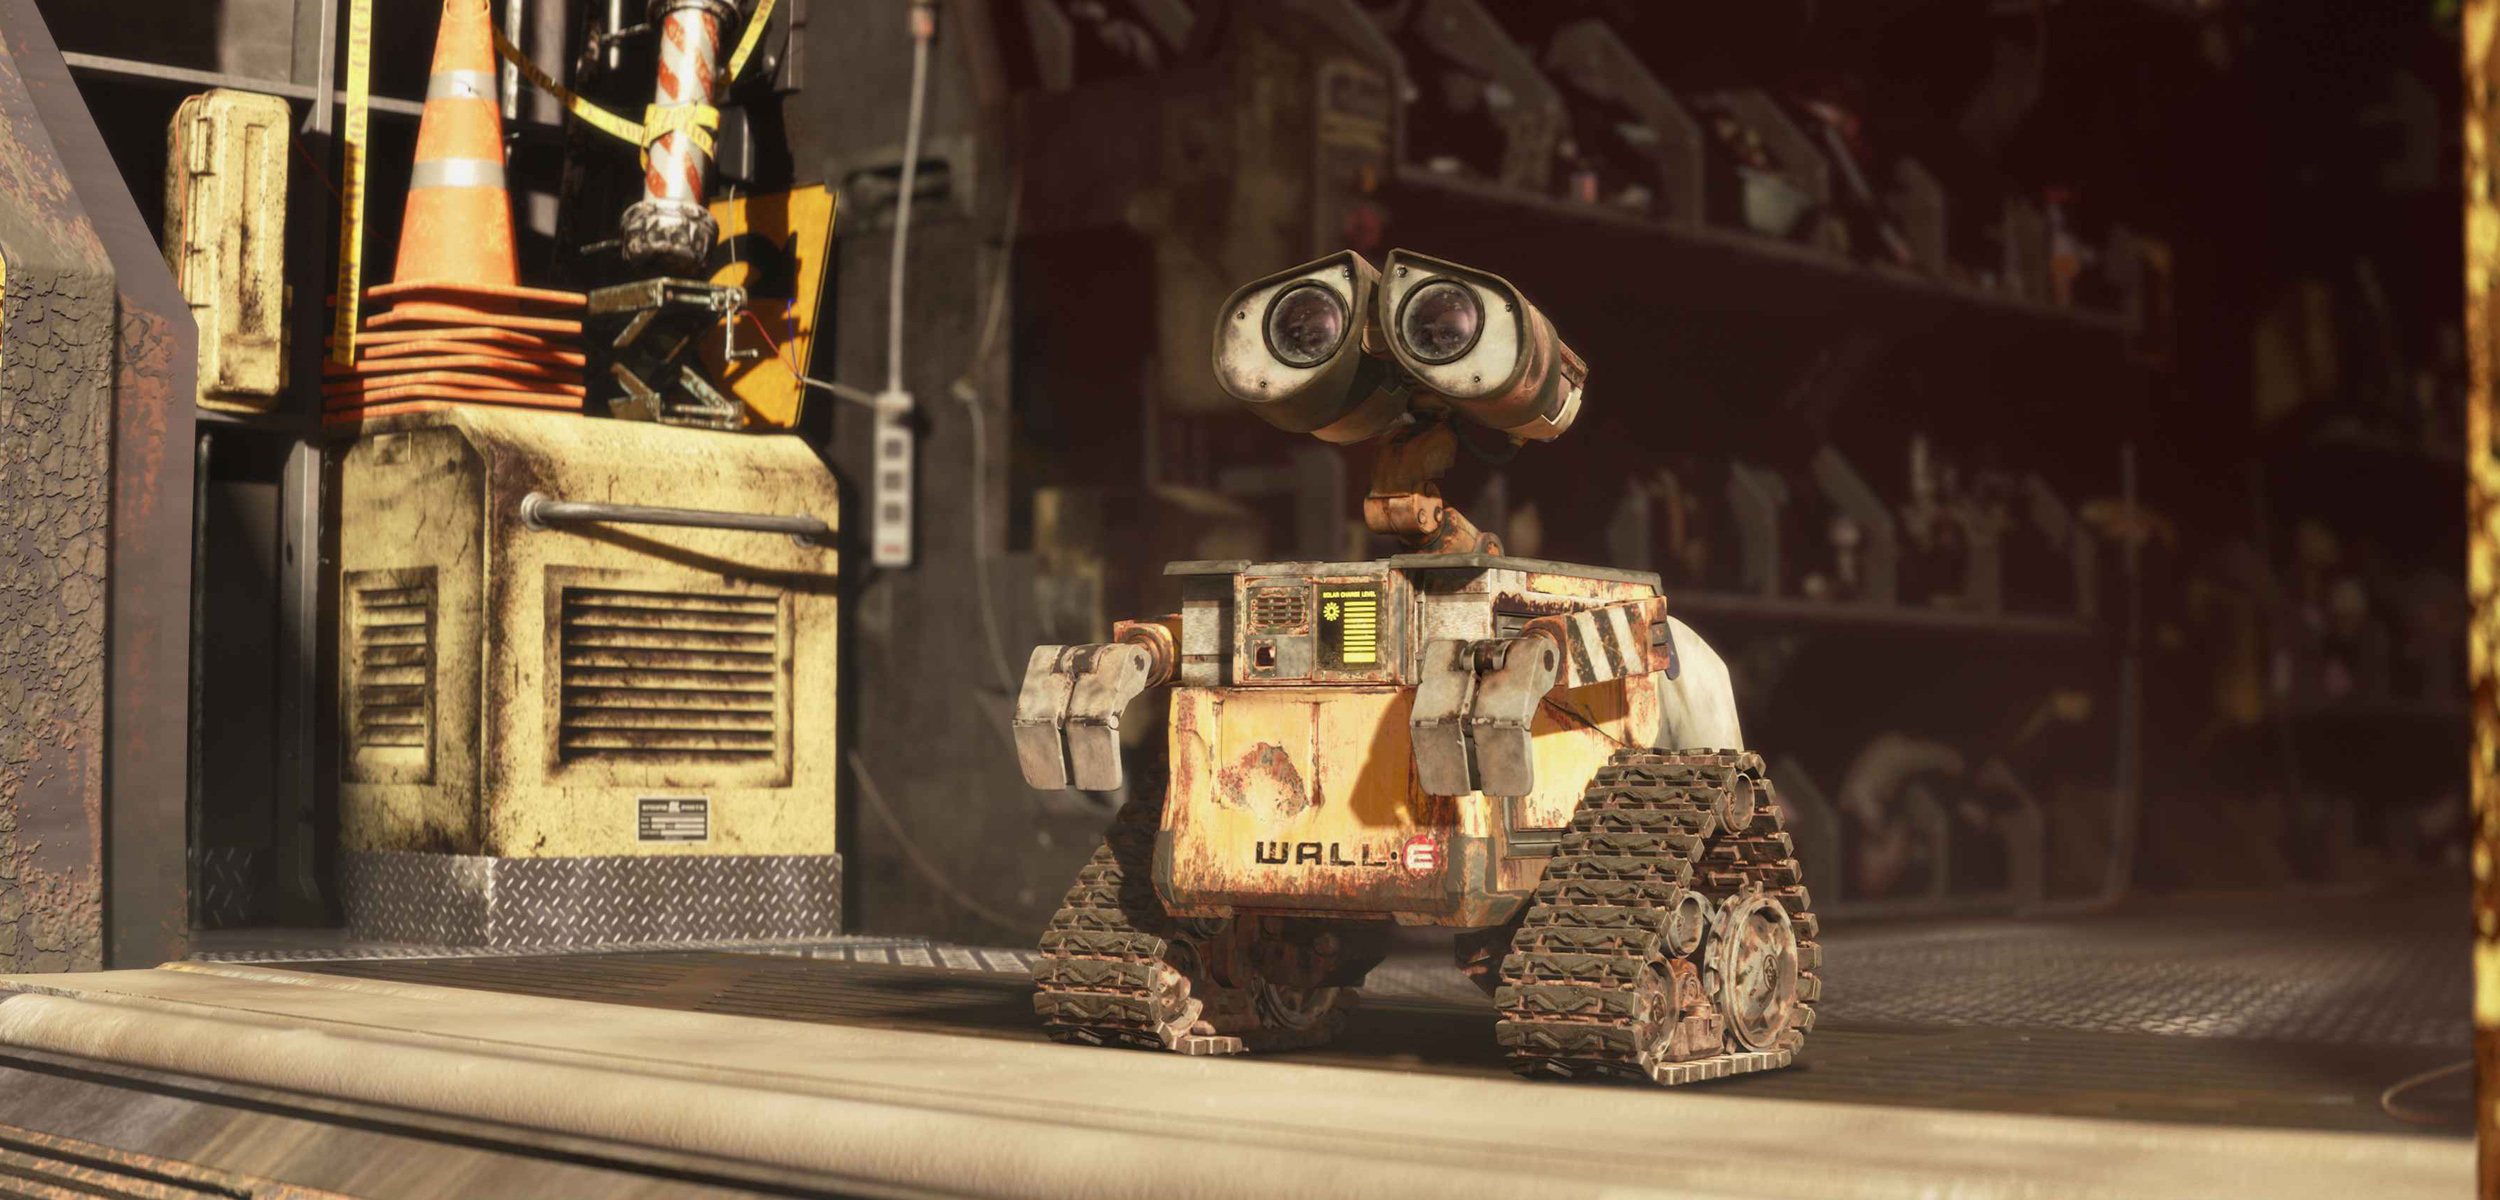 ВАЛЛ-И (WALL-E) 2008